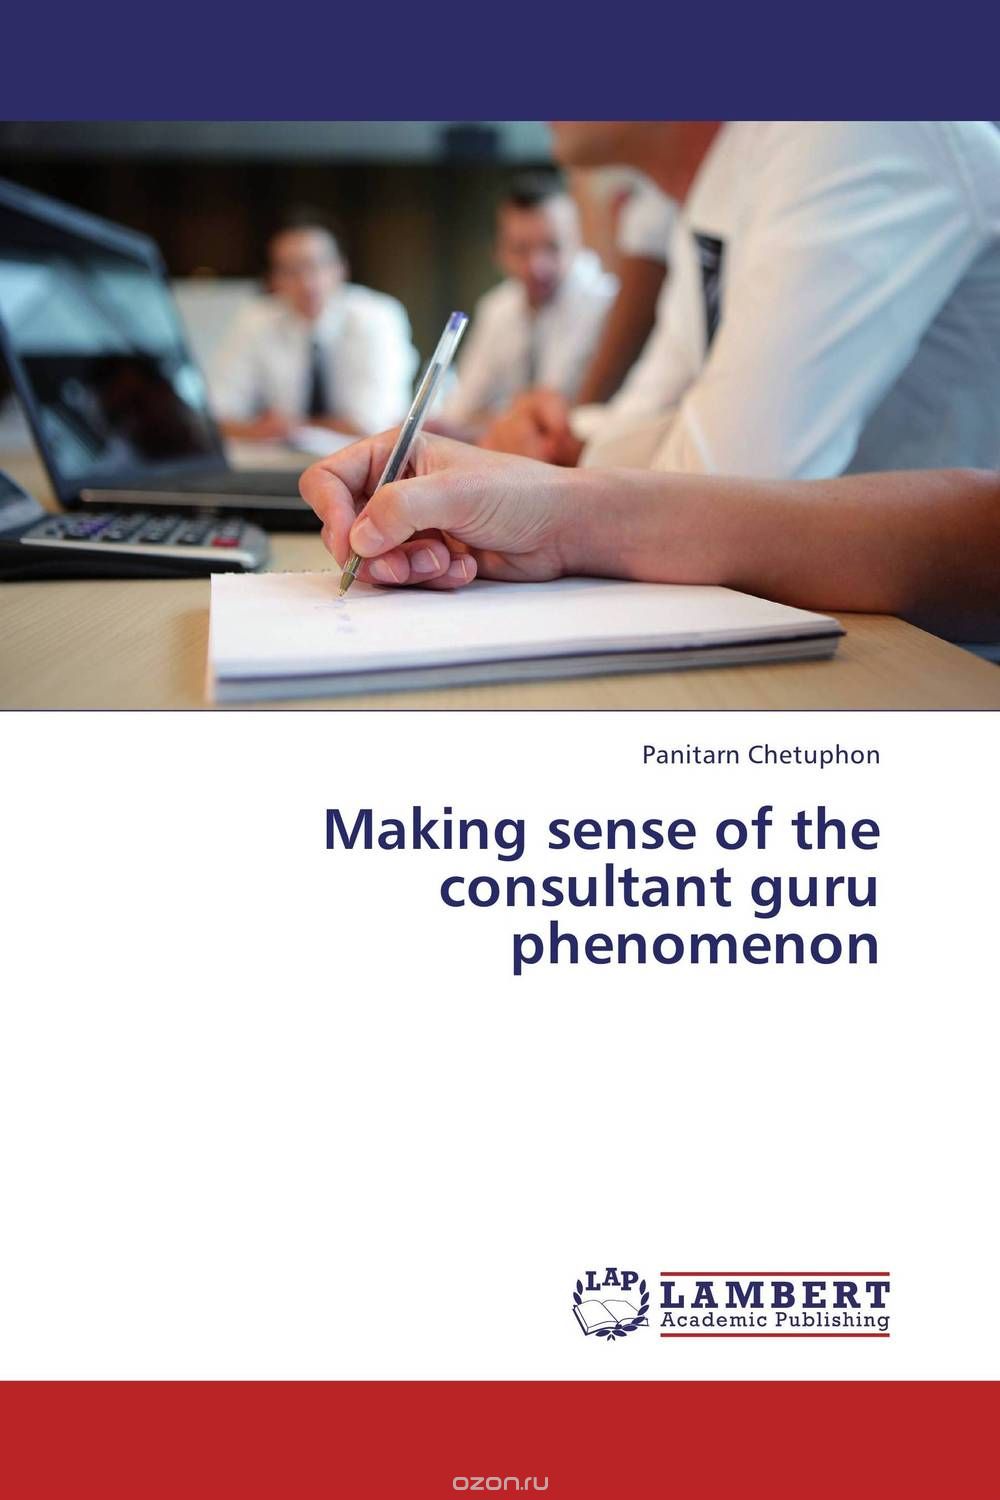 Скачать книгу "Making sense of the consultant guru phenomenon"